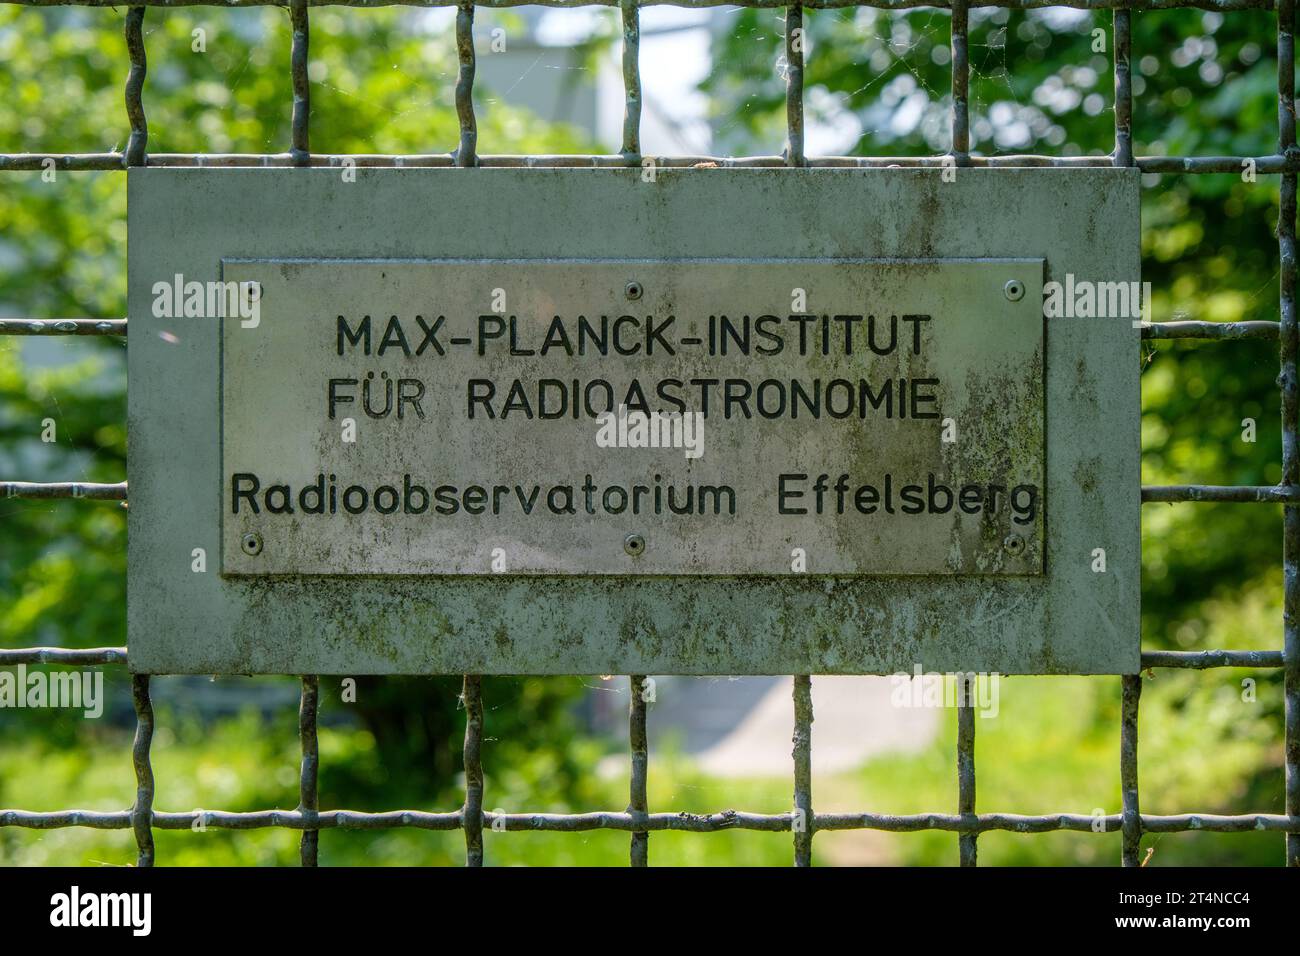 Segnaletica alla recinzione del Max-Planck-Institut für Radioastronomie (istituto per la radioastronomia) a Effelsberg, Germania Foto Stock